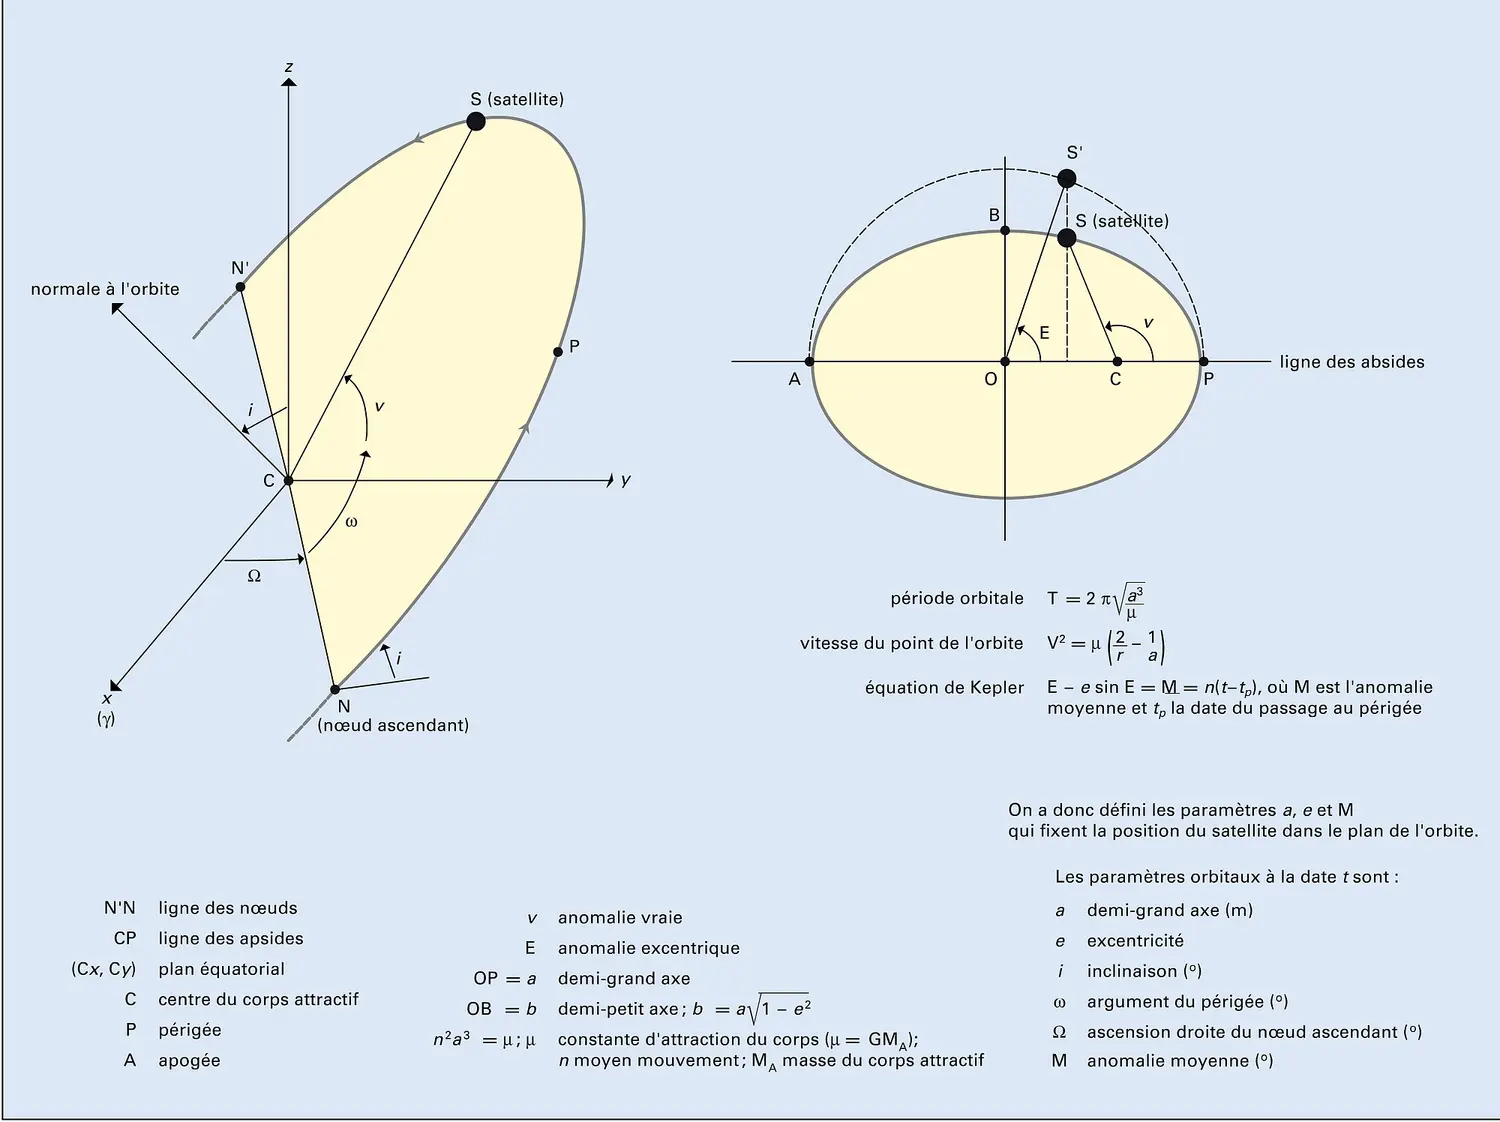 Paramètres orbitaux képlériens